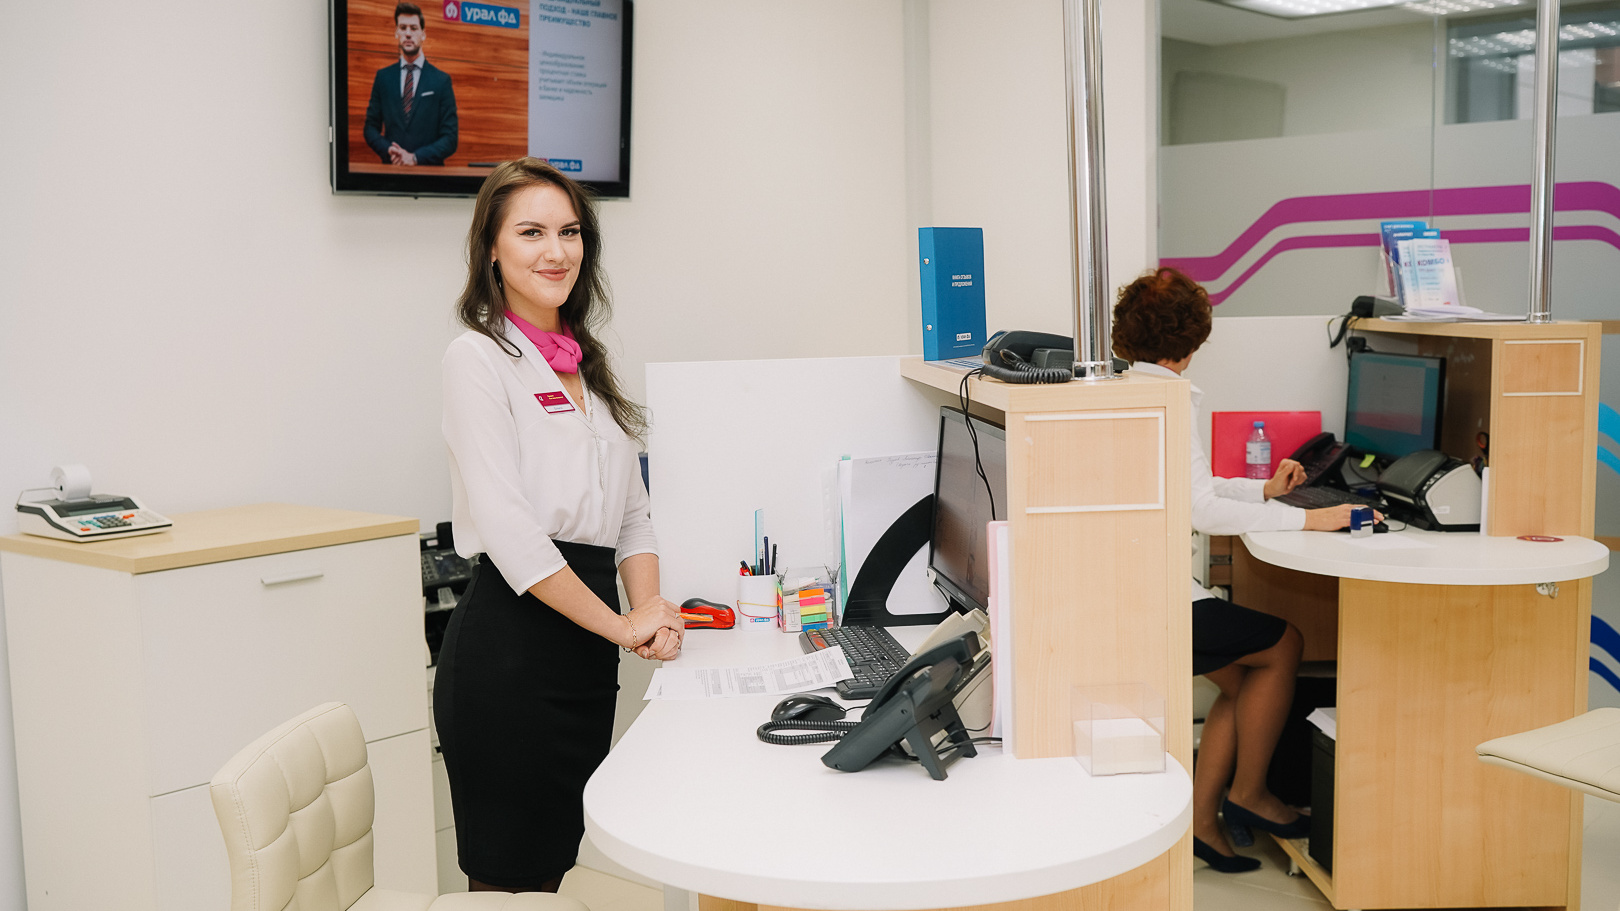 Банк «Урал ФД» и «Клюква» открыли новый офис на территории технопарка Morion Digital